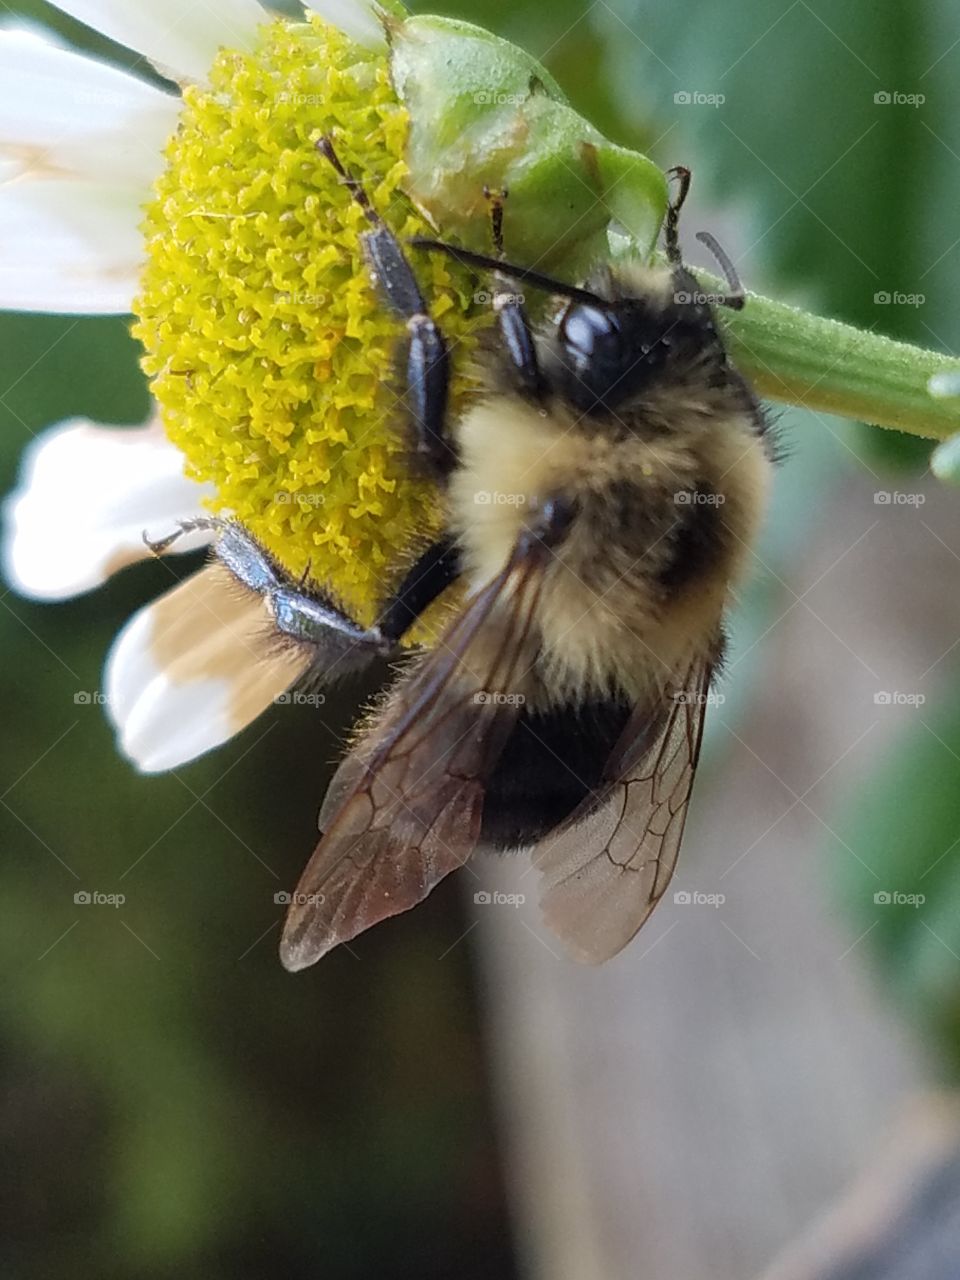 a daisy and its honeybee